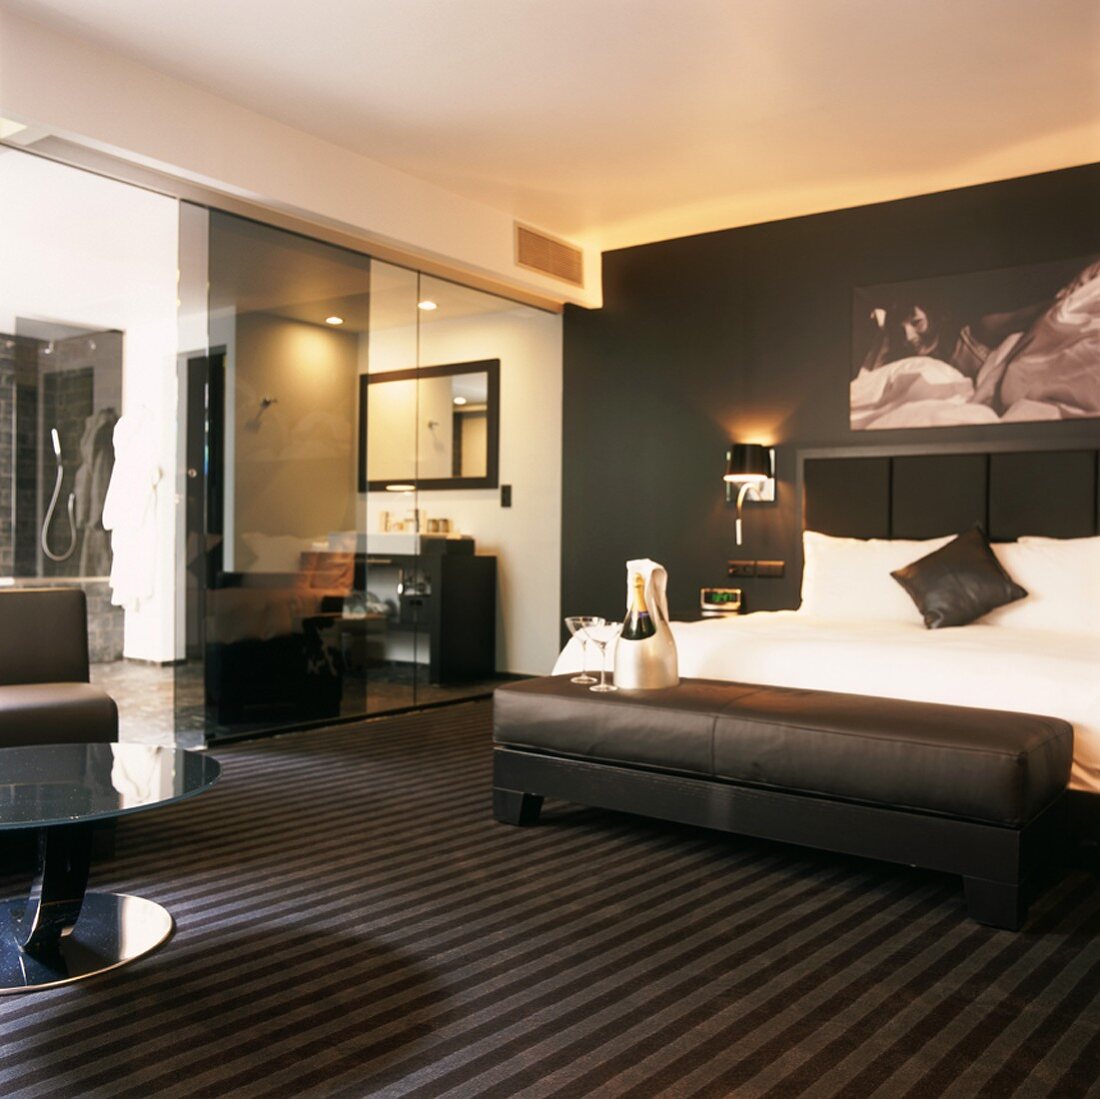 Luxuriöses, schwarz-weisses Schlafzimmer mit gepolsteter Ledersitzbank und Badezimmer en suite